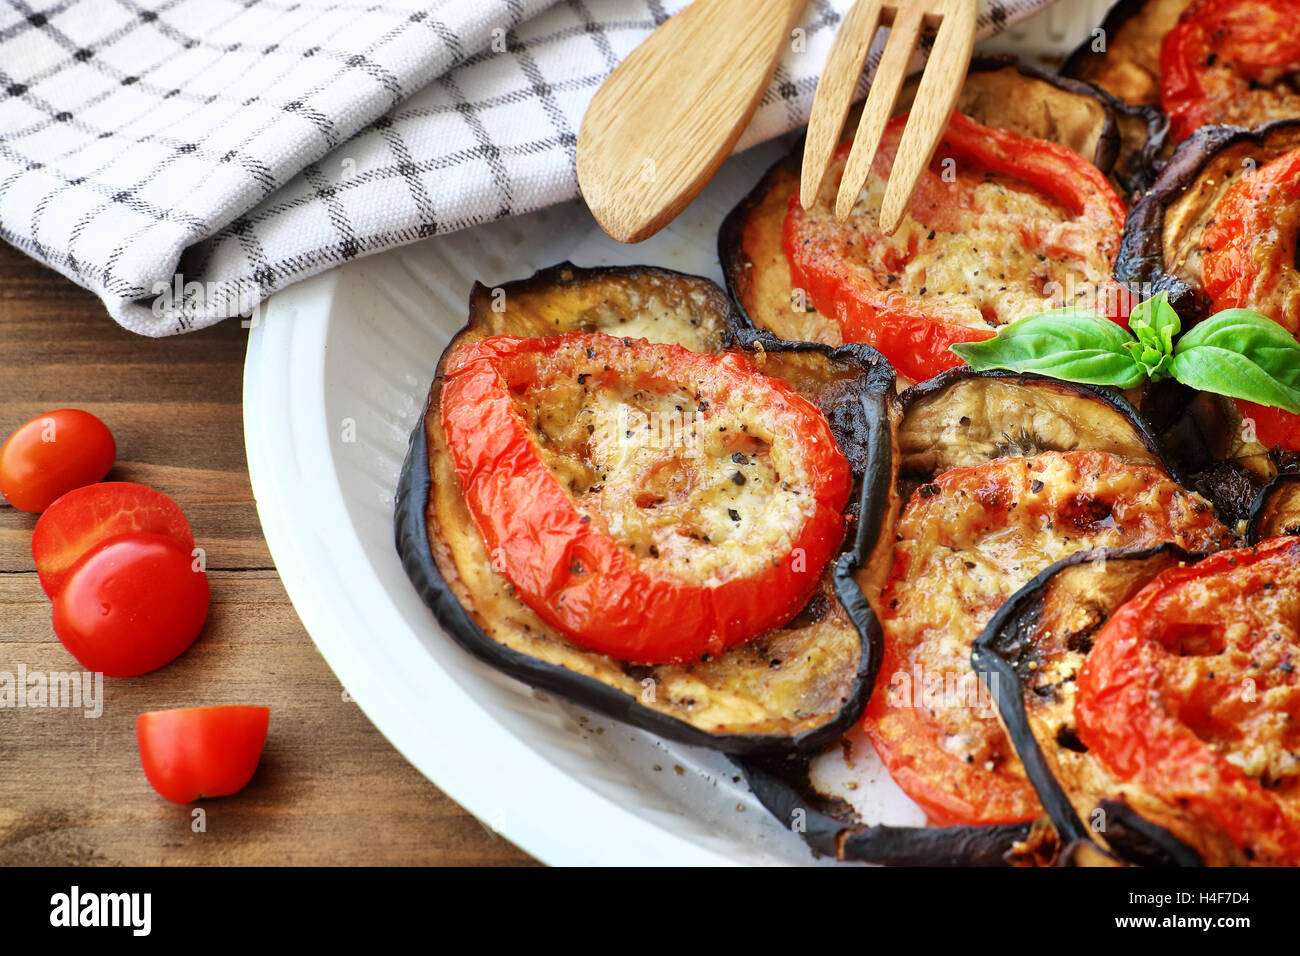 De savoureux repas de Thanksgiving, aubergine grillée avec tomates et fromage sur la plaque sur une table en bois, de délicieux plats faits maison Banque D'Images